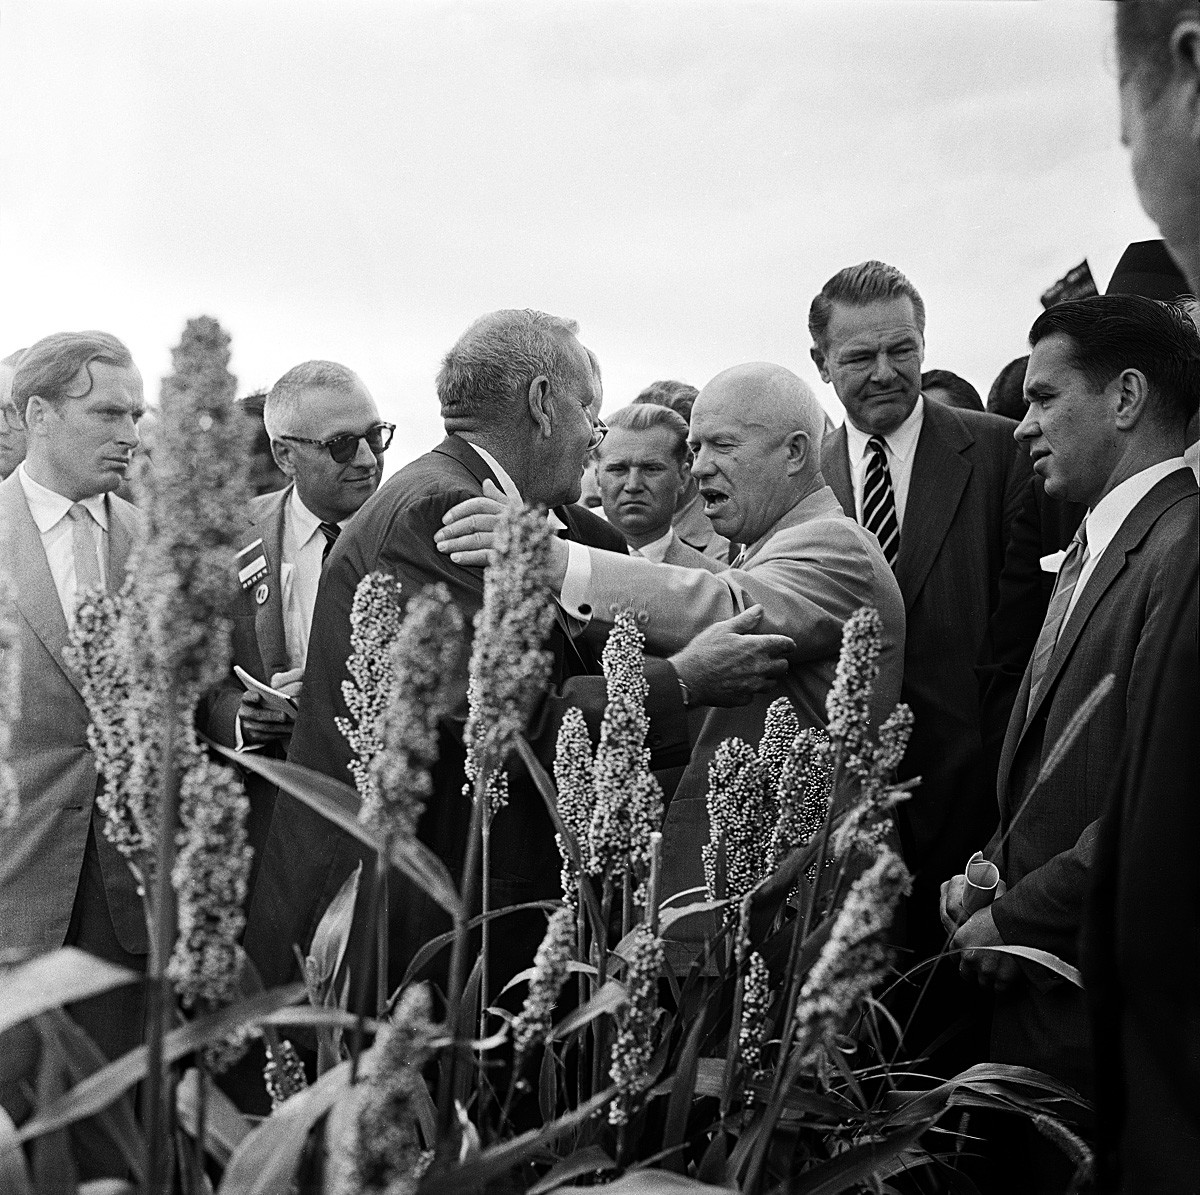  Никита Хрушчов и неговият хазаин Розуел Гарст беседват между тях в полето по време на обиколка на фермерска повърхност в Куун Рапидс, Айова, 23 септември 1959 година 